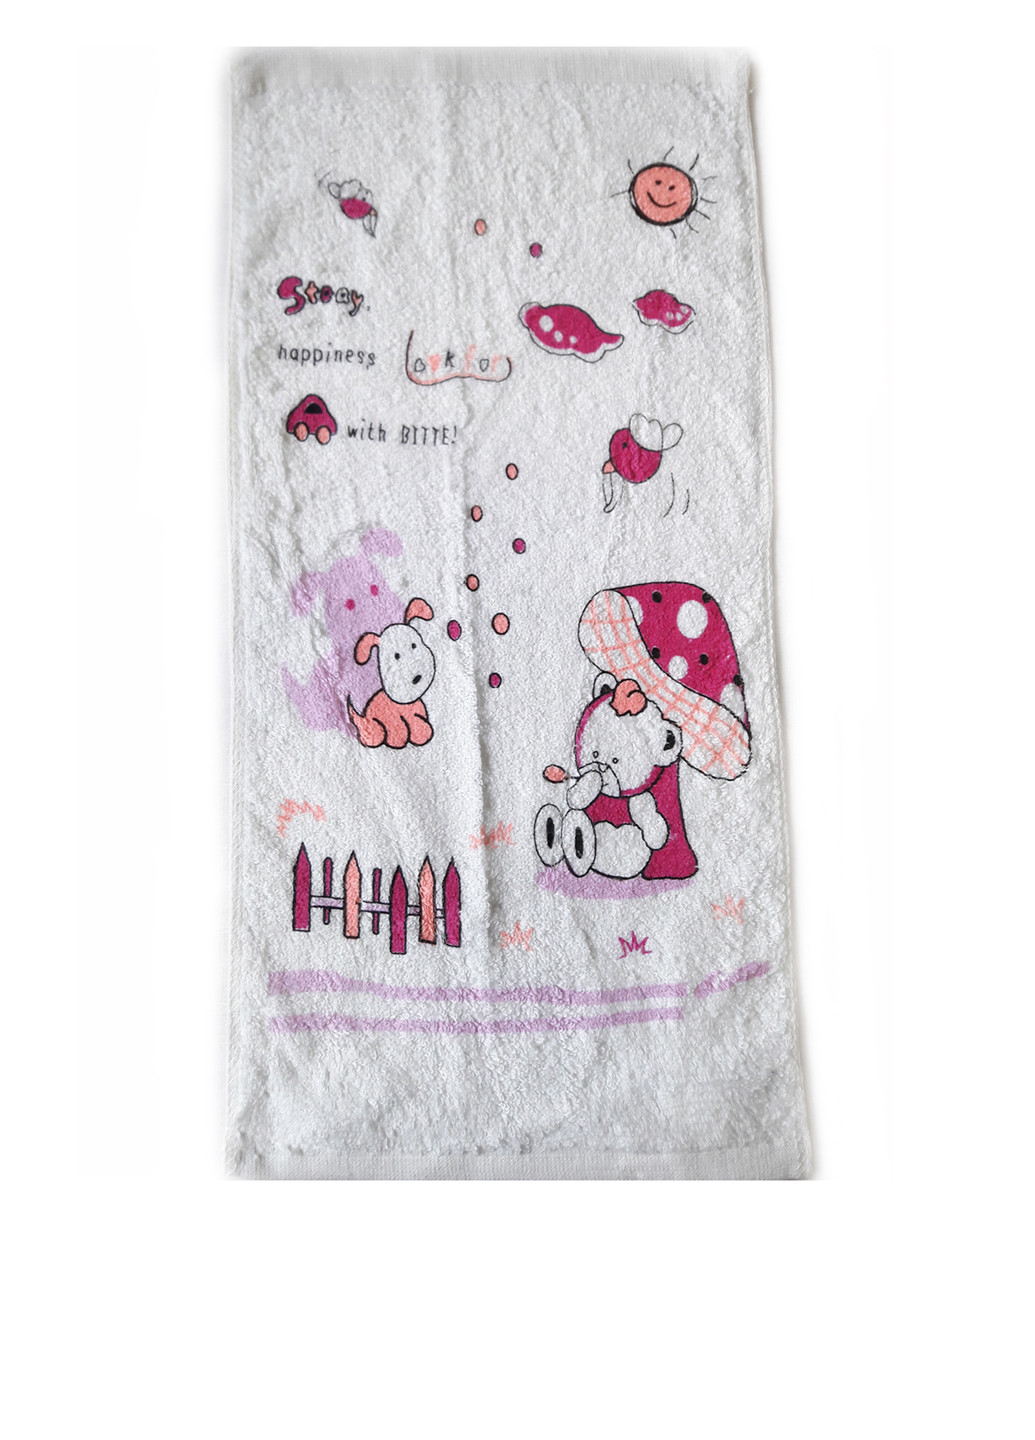 La Sana полотенце, 26*52 см рисунок розовый производство - Китай